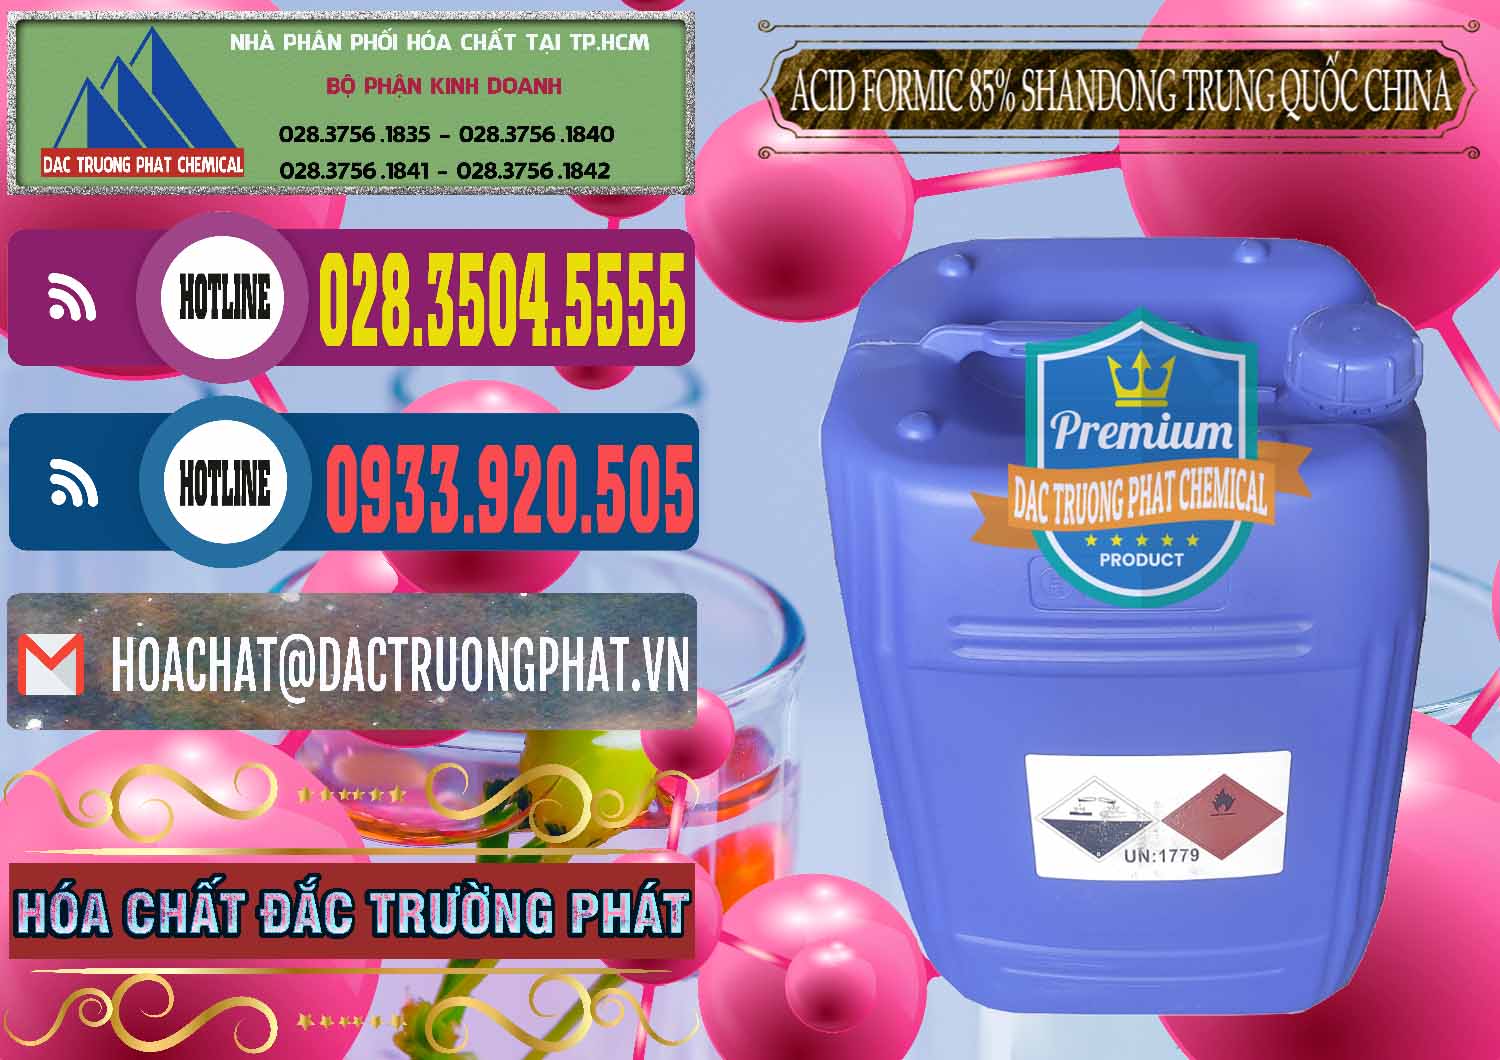 Cty chuyên bán ( cung ứng ) Acid Formic - Axit Formic 85% Shandong Trung Quốc China - 0235 - Cty chuyên kinh doanh và cung cấp hóa chất tại TP.HCM - muabanhoachat.com.vn